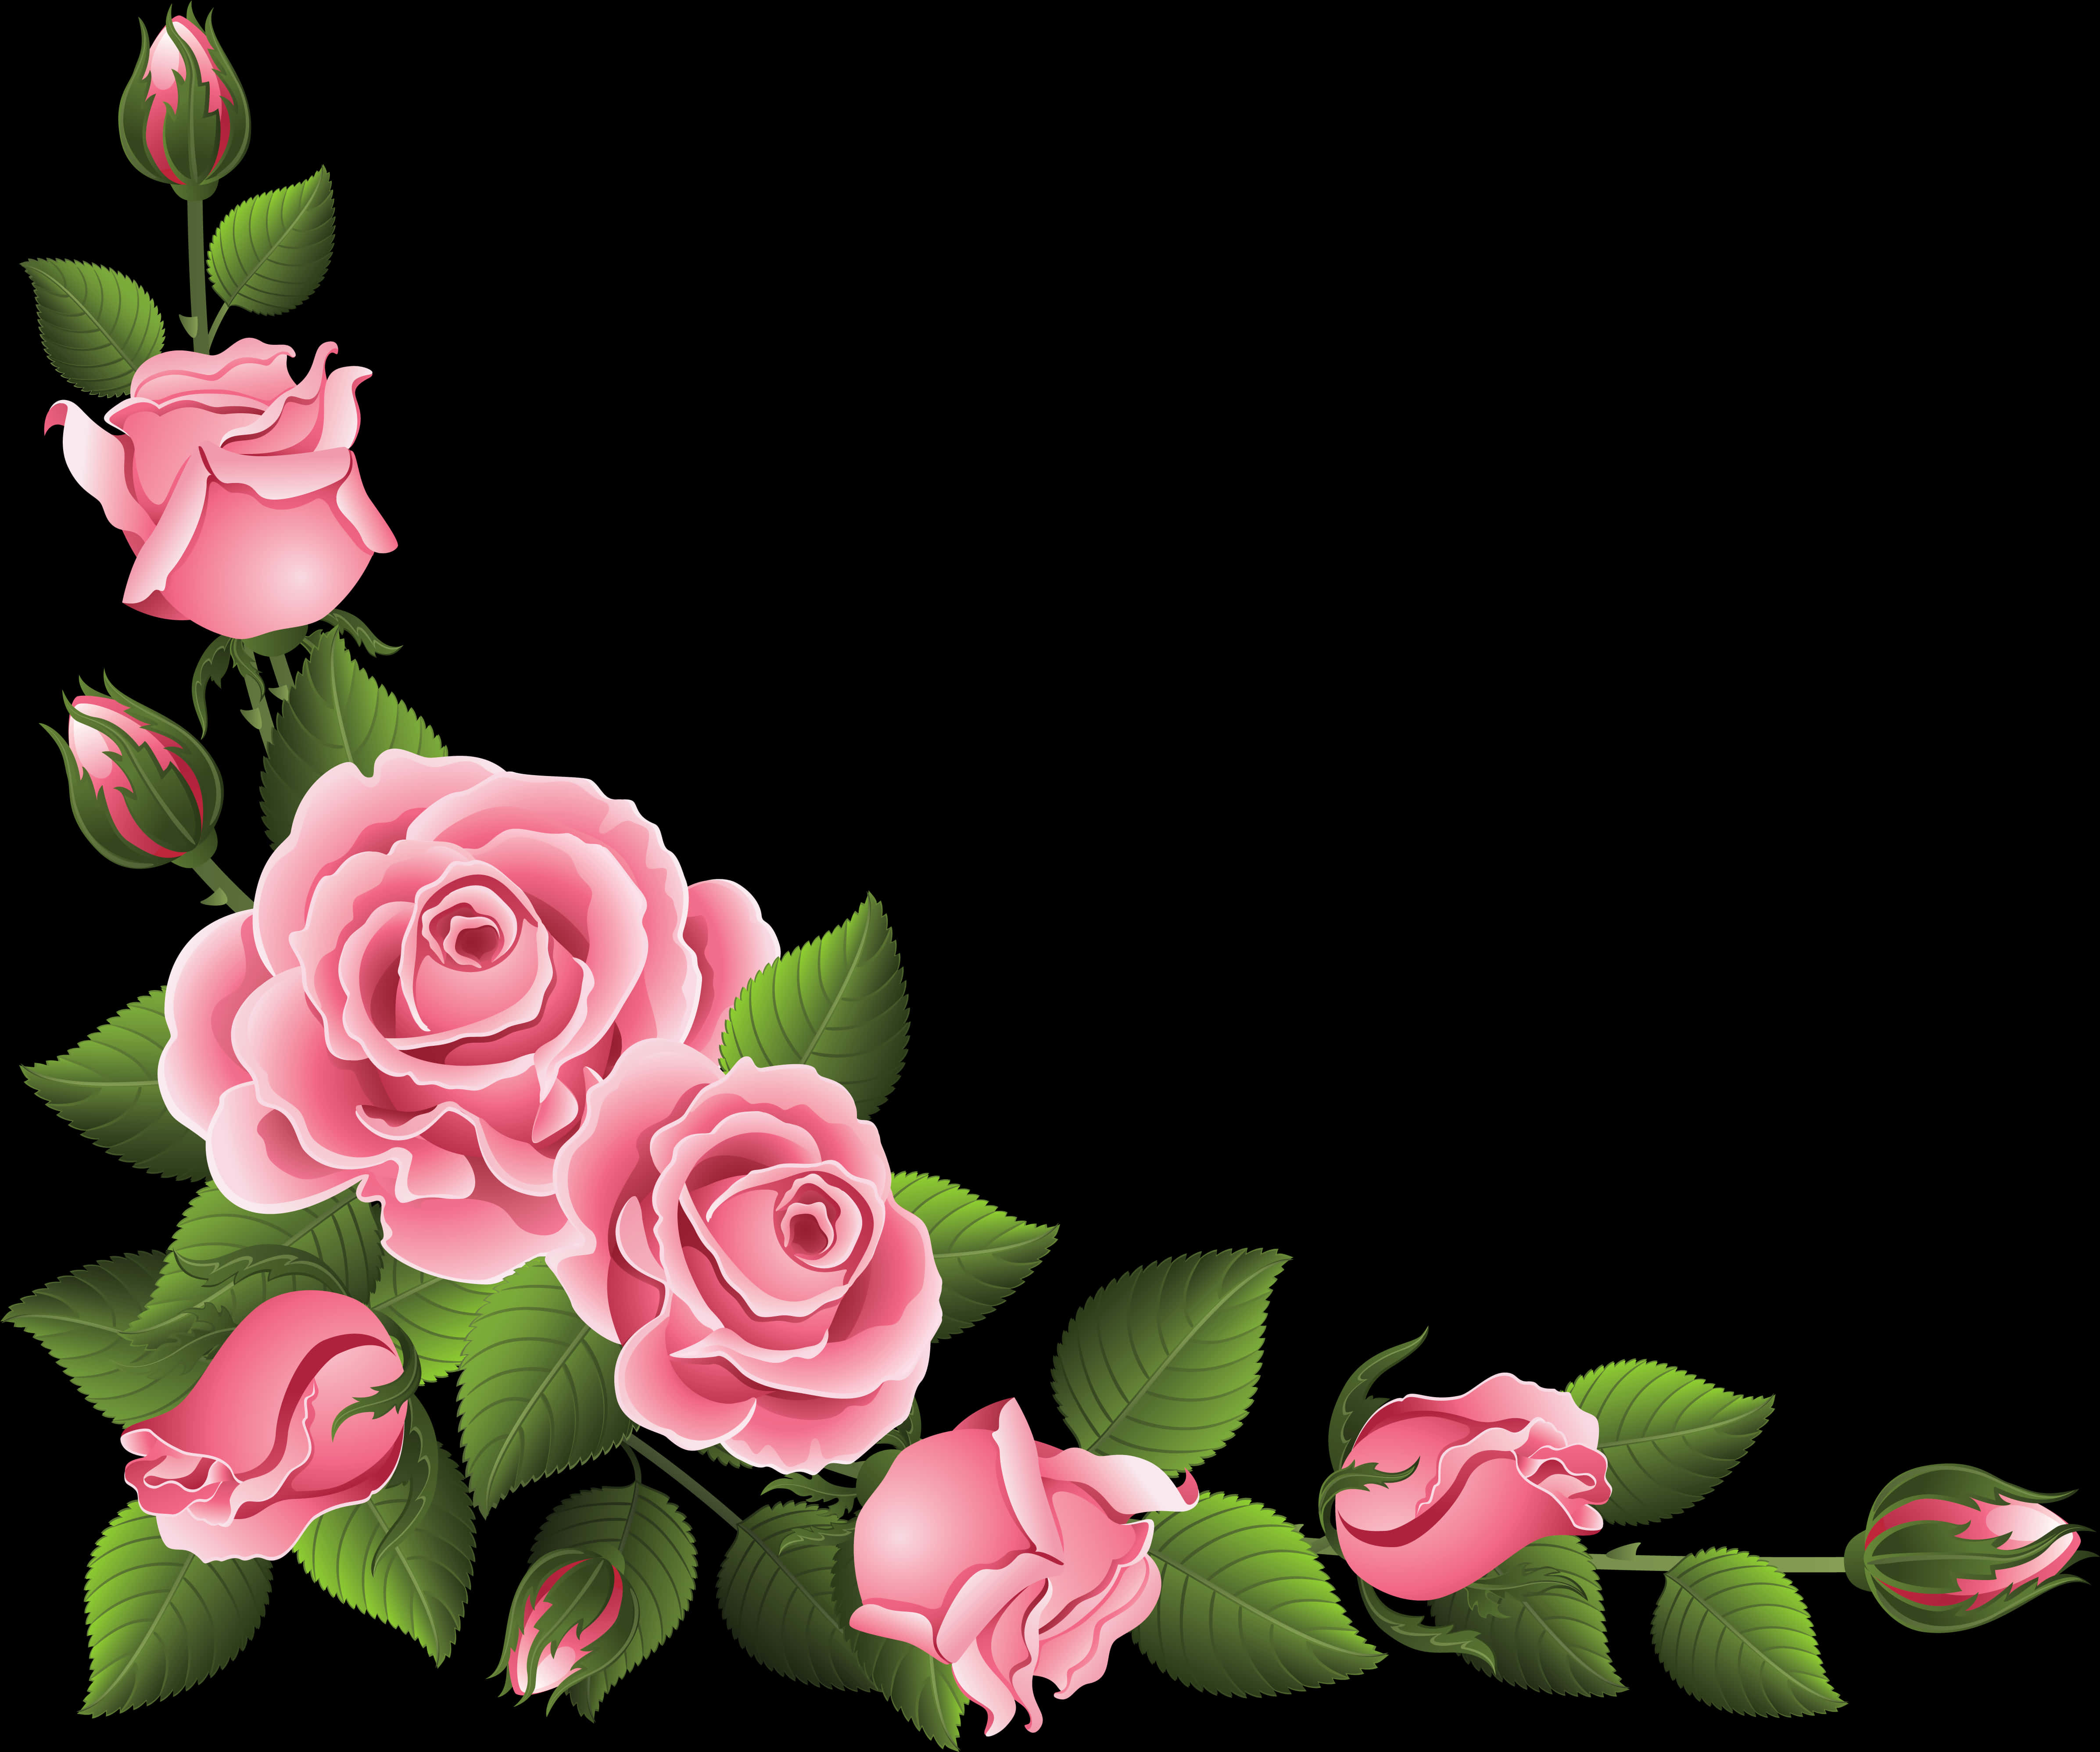 Pink Roses Floral Border Design PNG image